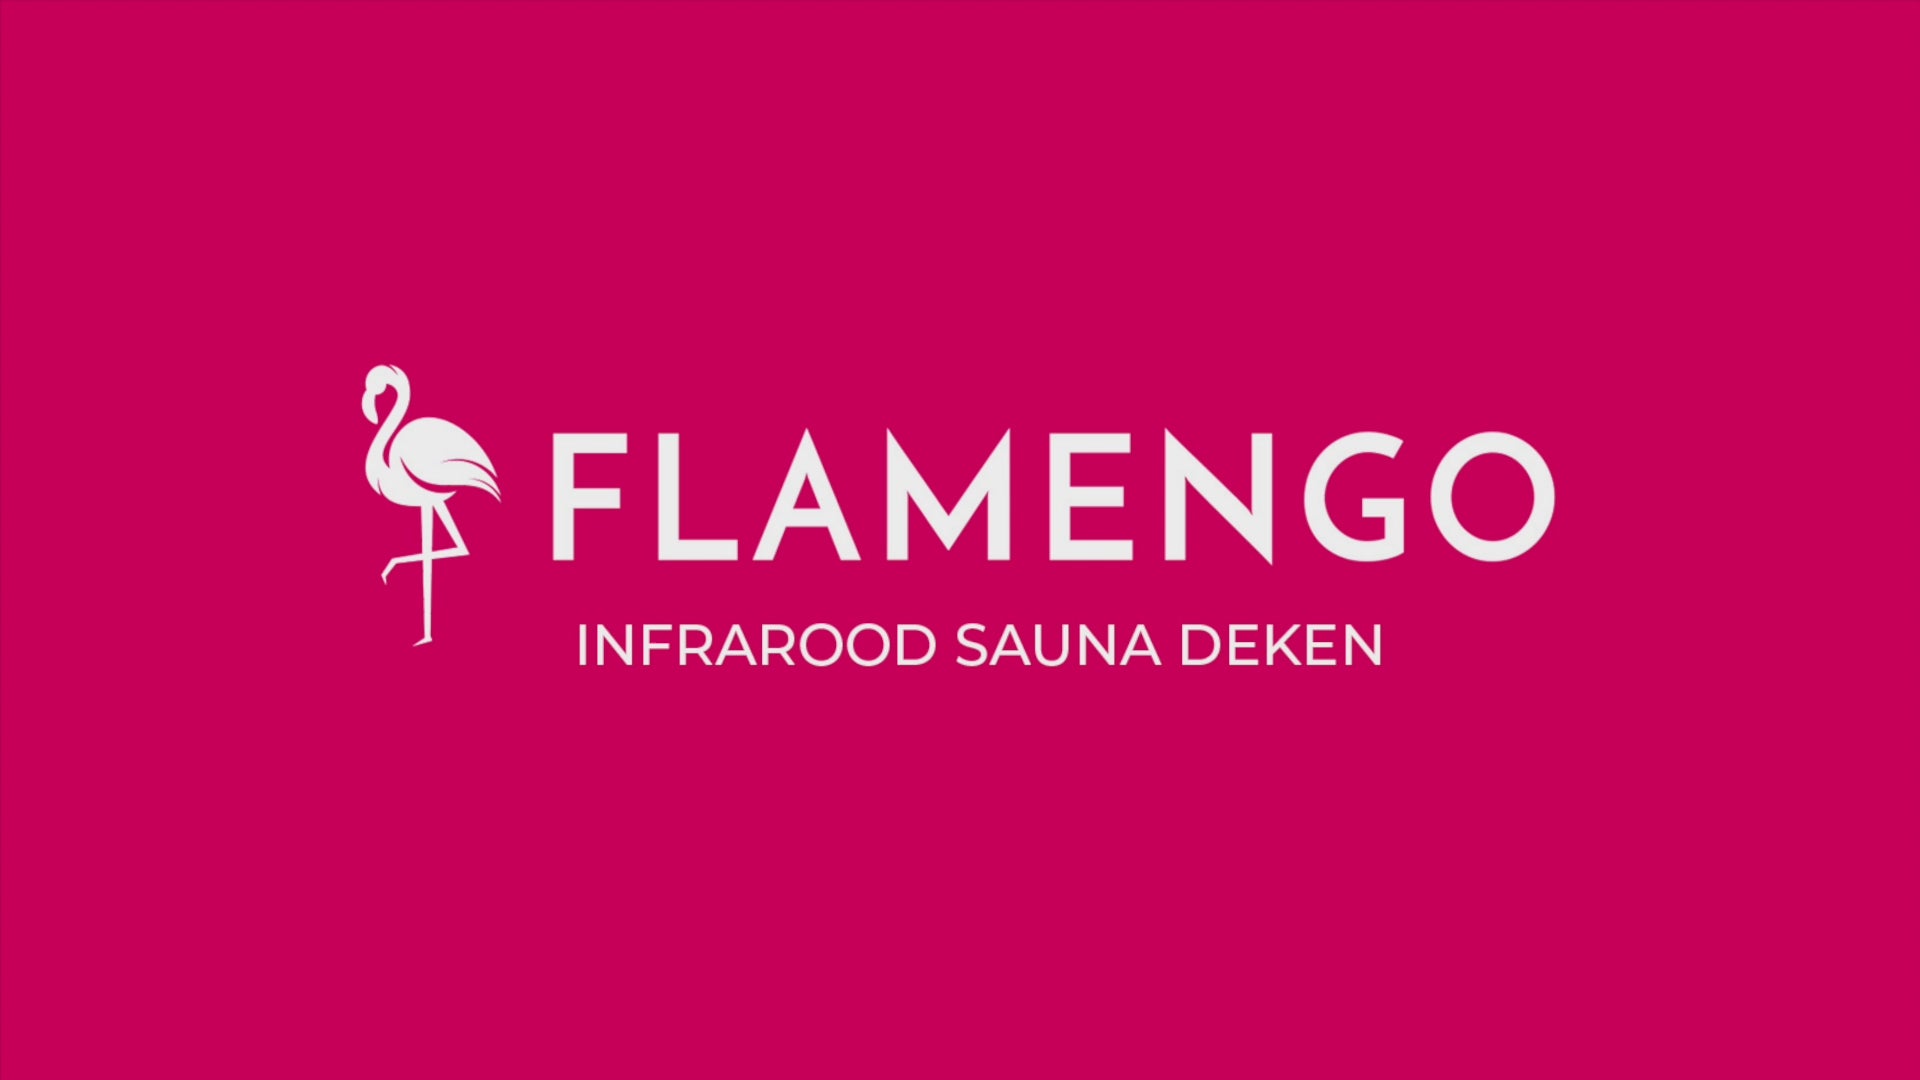 Load video: flamengo infrarood deken video